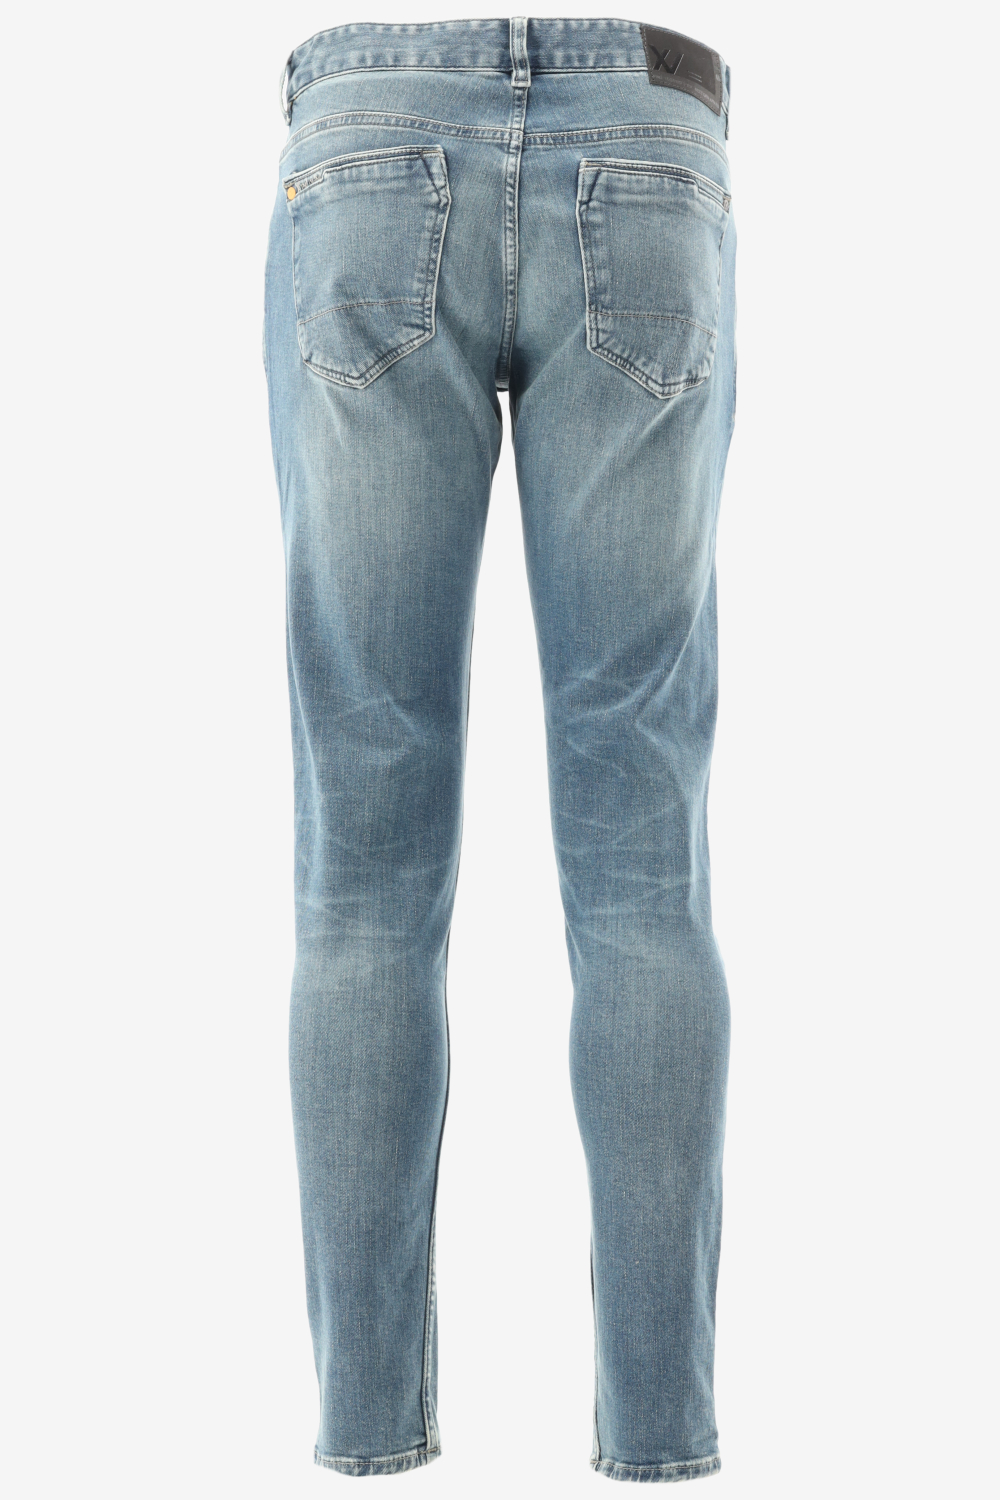 Outlet VERZENDING! GRATIS Herenkleding - Jeans Slim Webshop Pme Fashion Fit | Bergmans - Legend XV